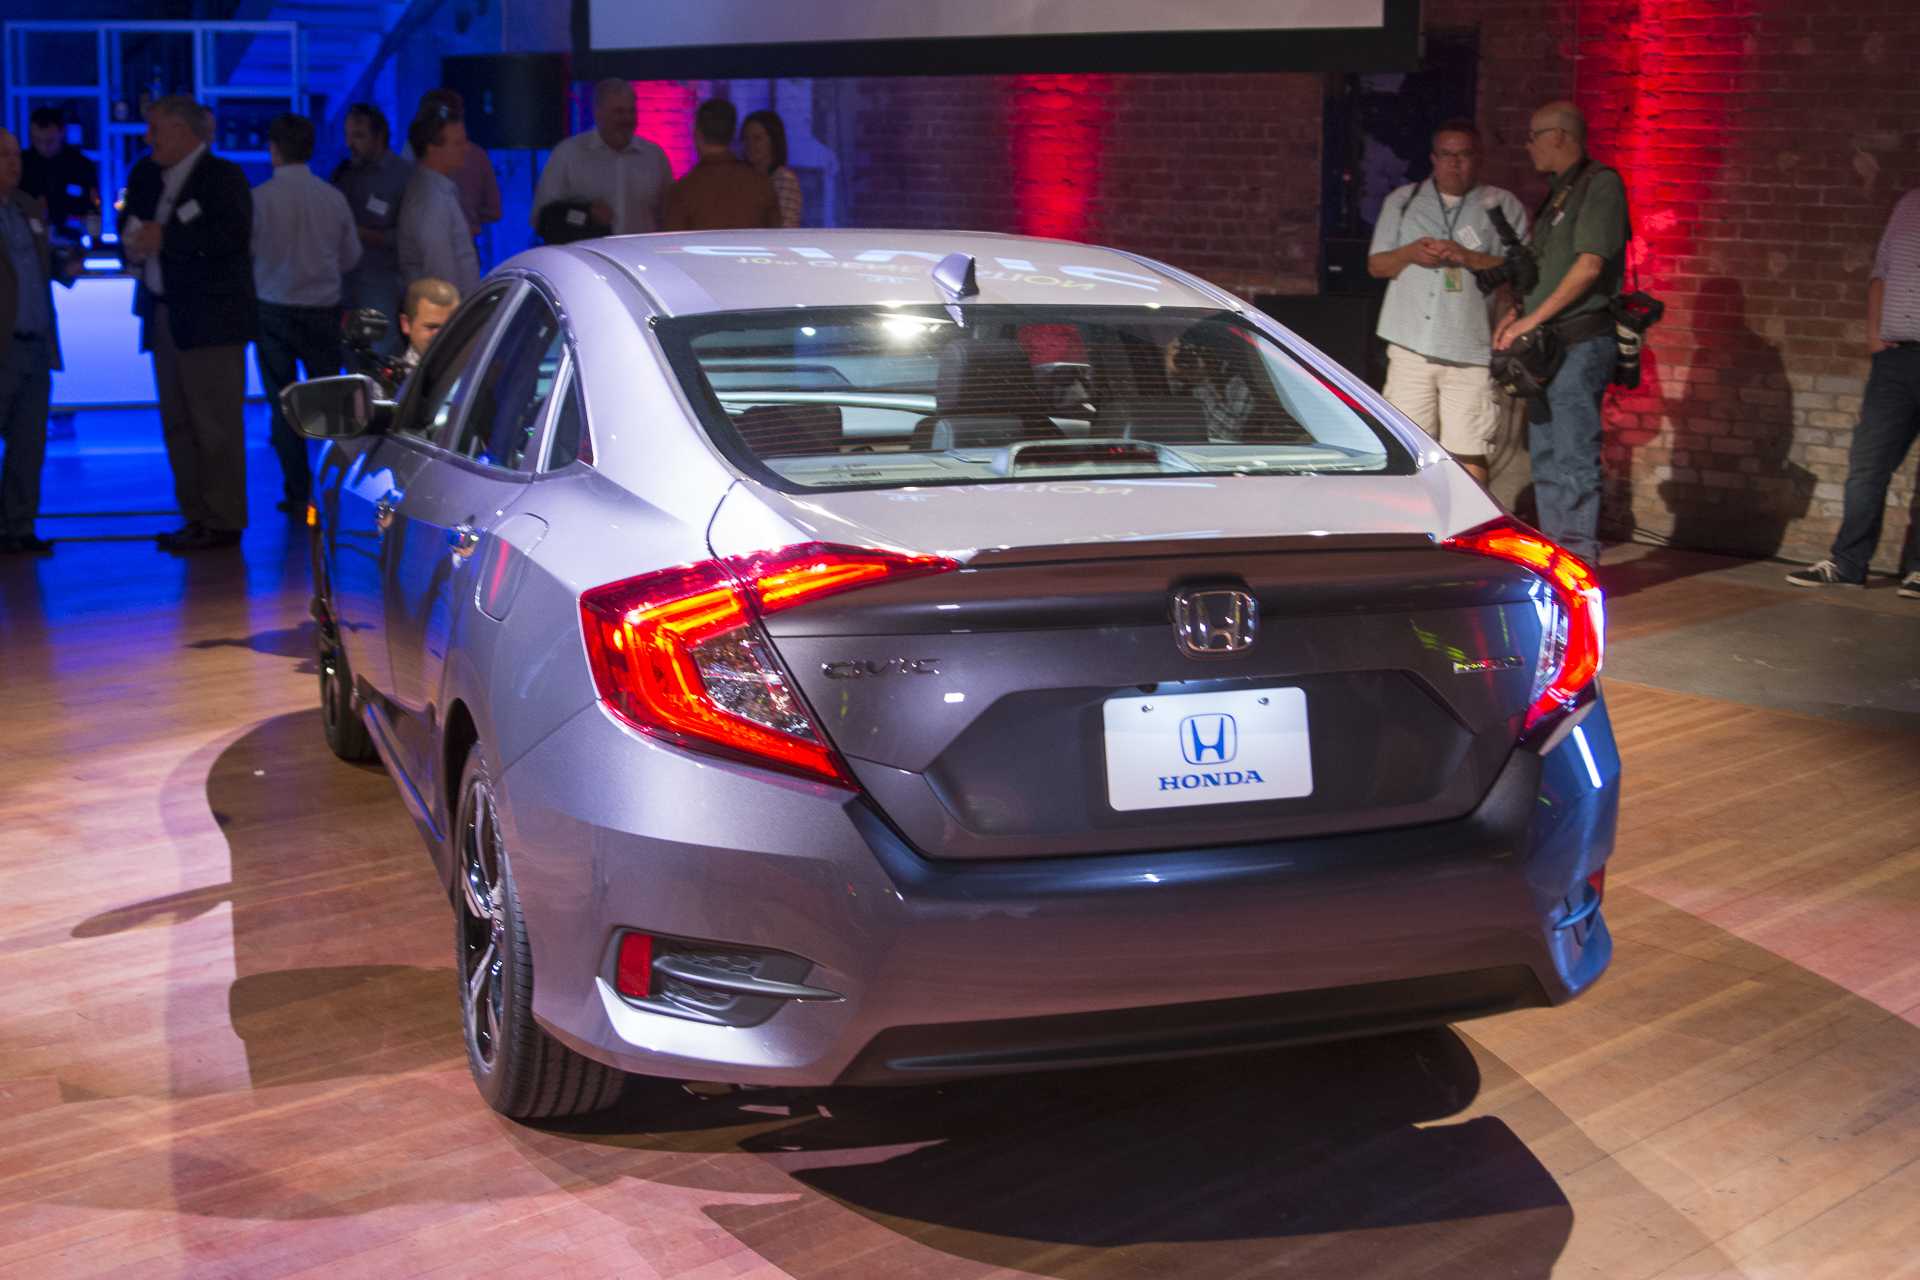 Компания Honda официально представила седан Civic нового одиннадцатого по счету поколения Работая над внешностью модели, специалисты японской марки